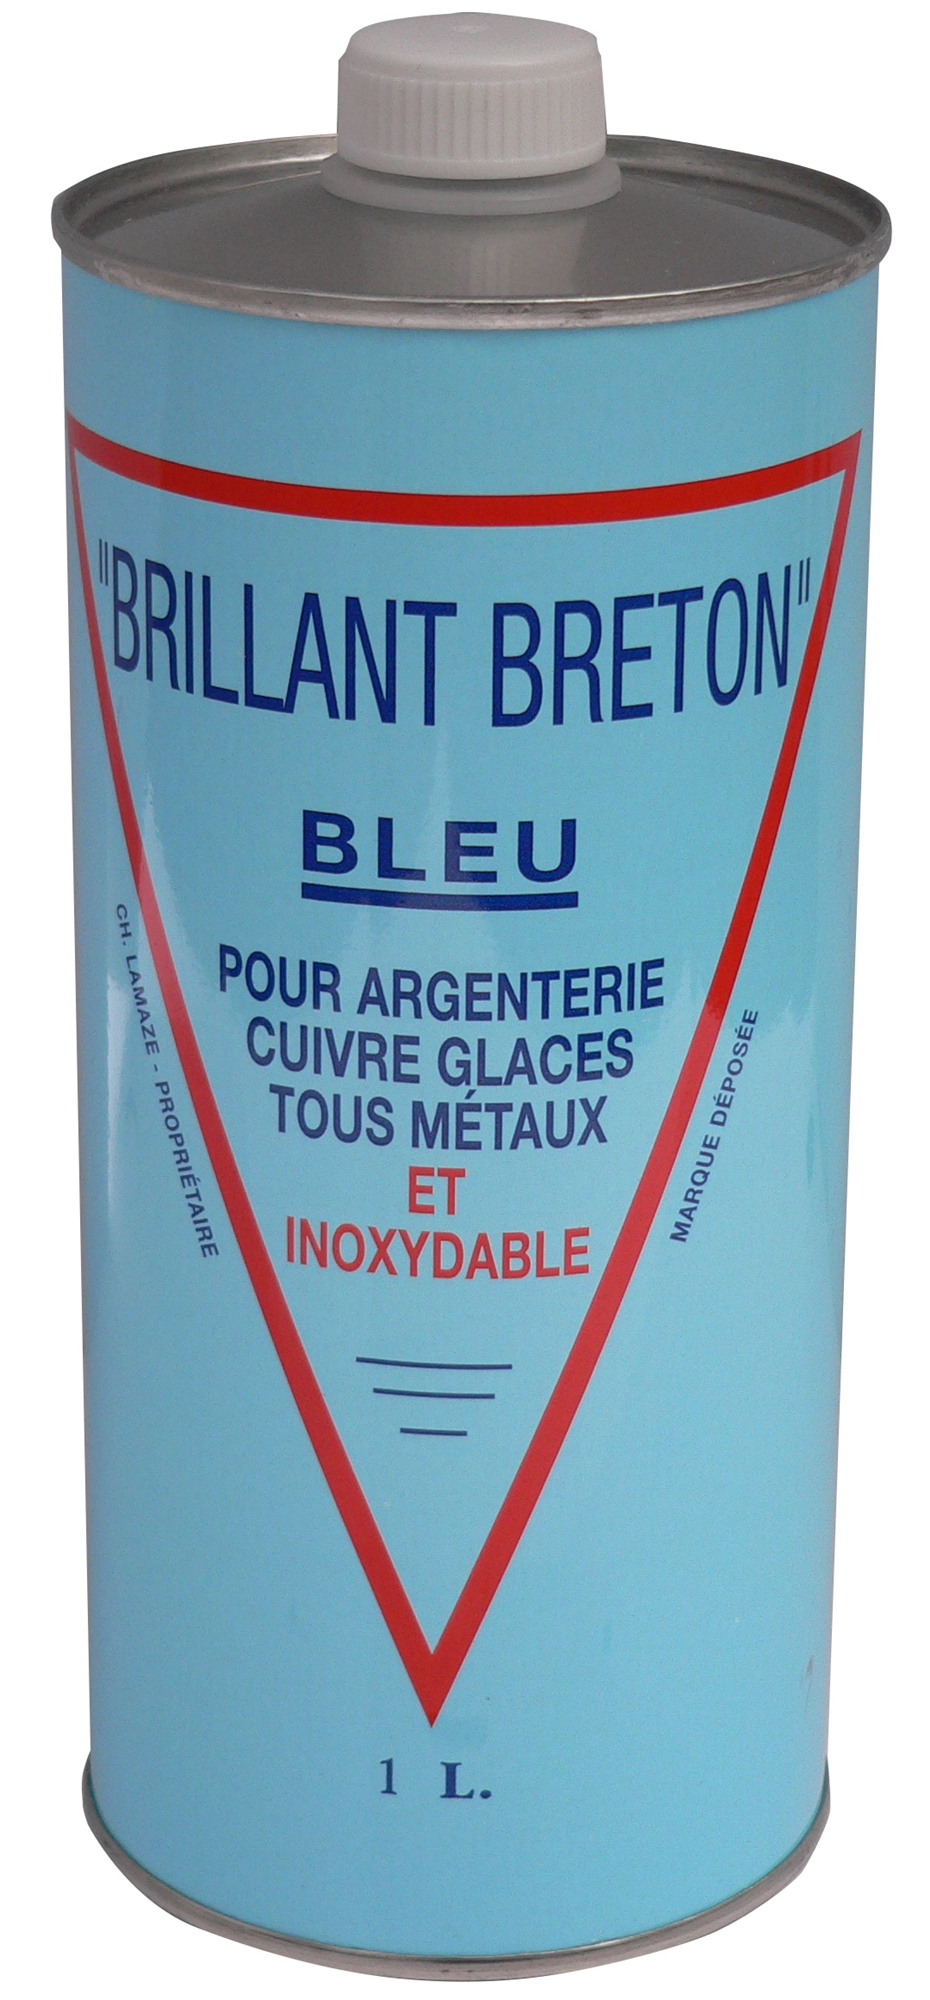 Brillant breton bleu nettoyant argenterie 1 L - Voussert